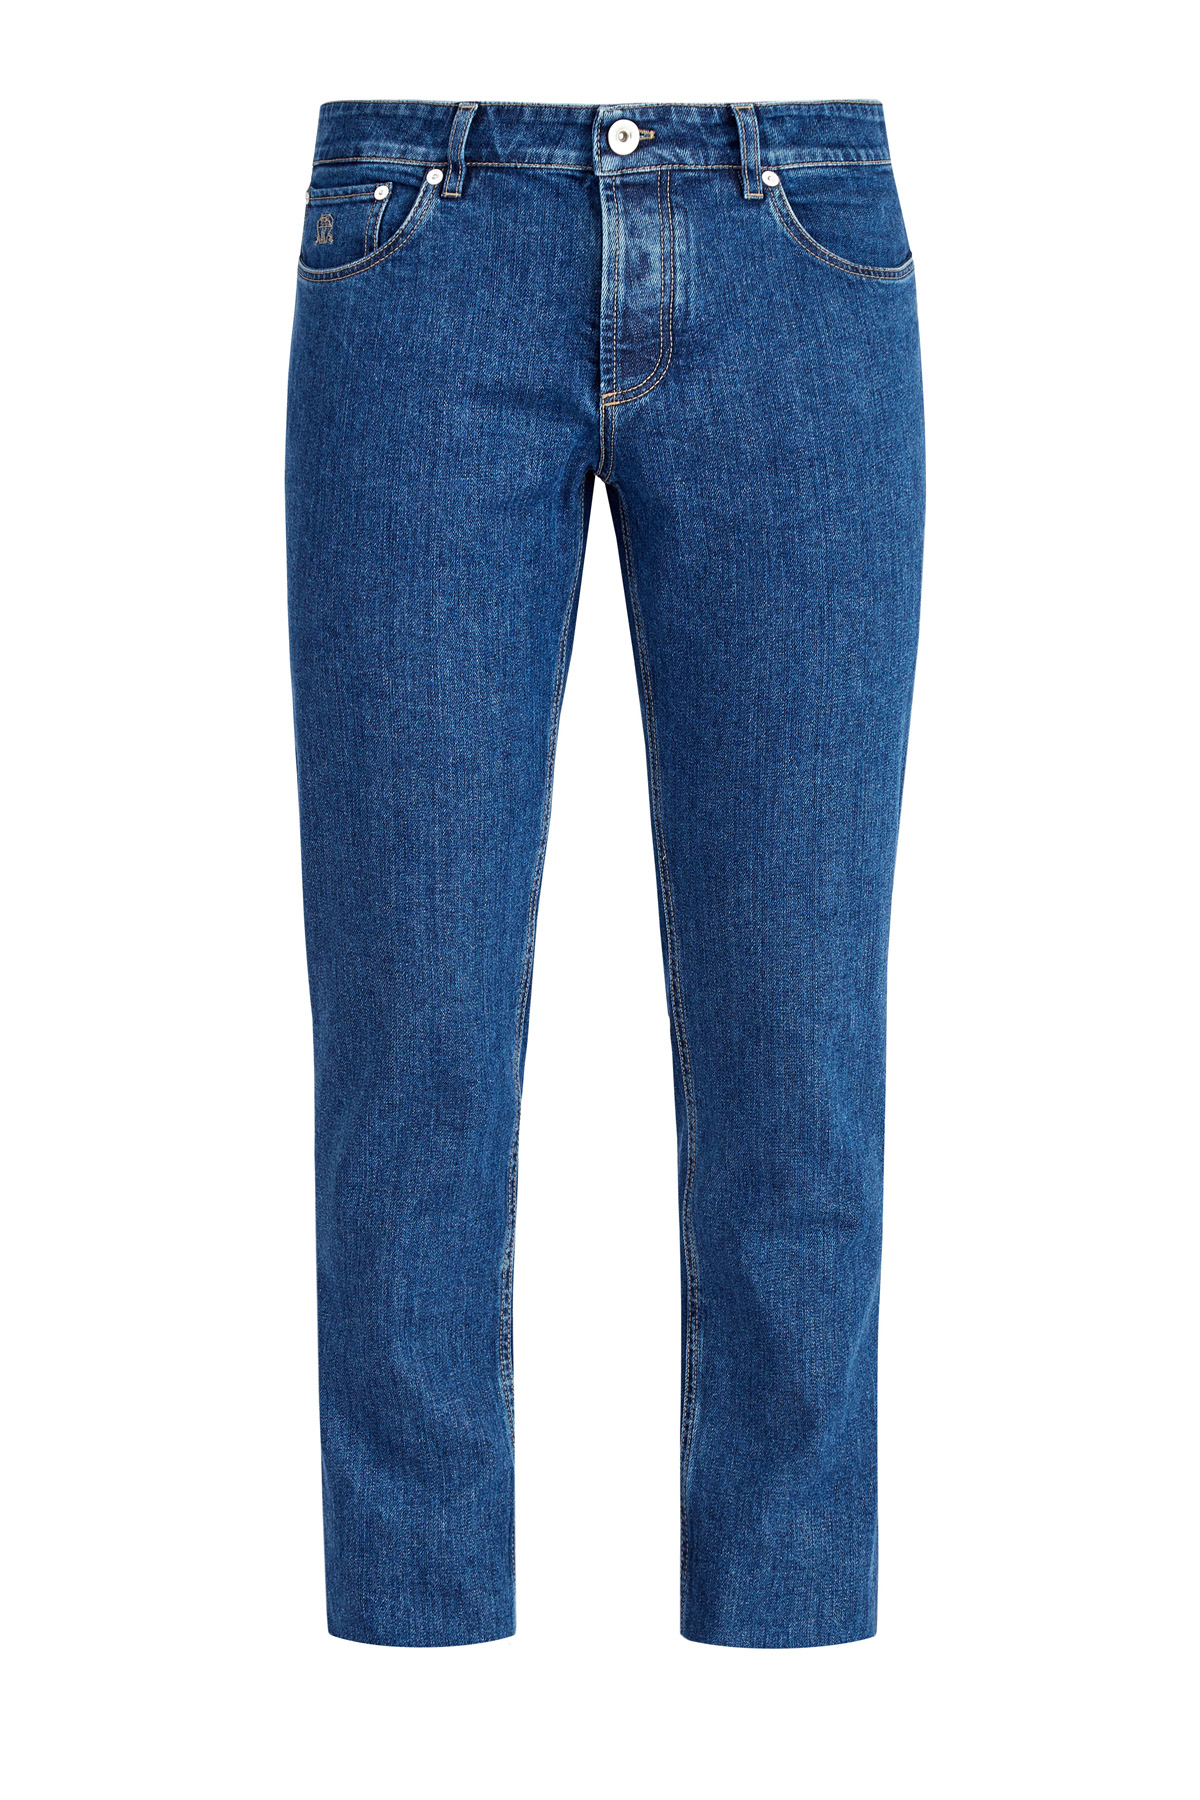 Классические голубые джинсы мужские